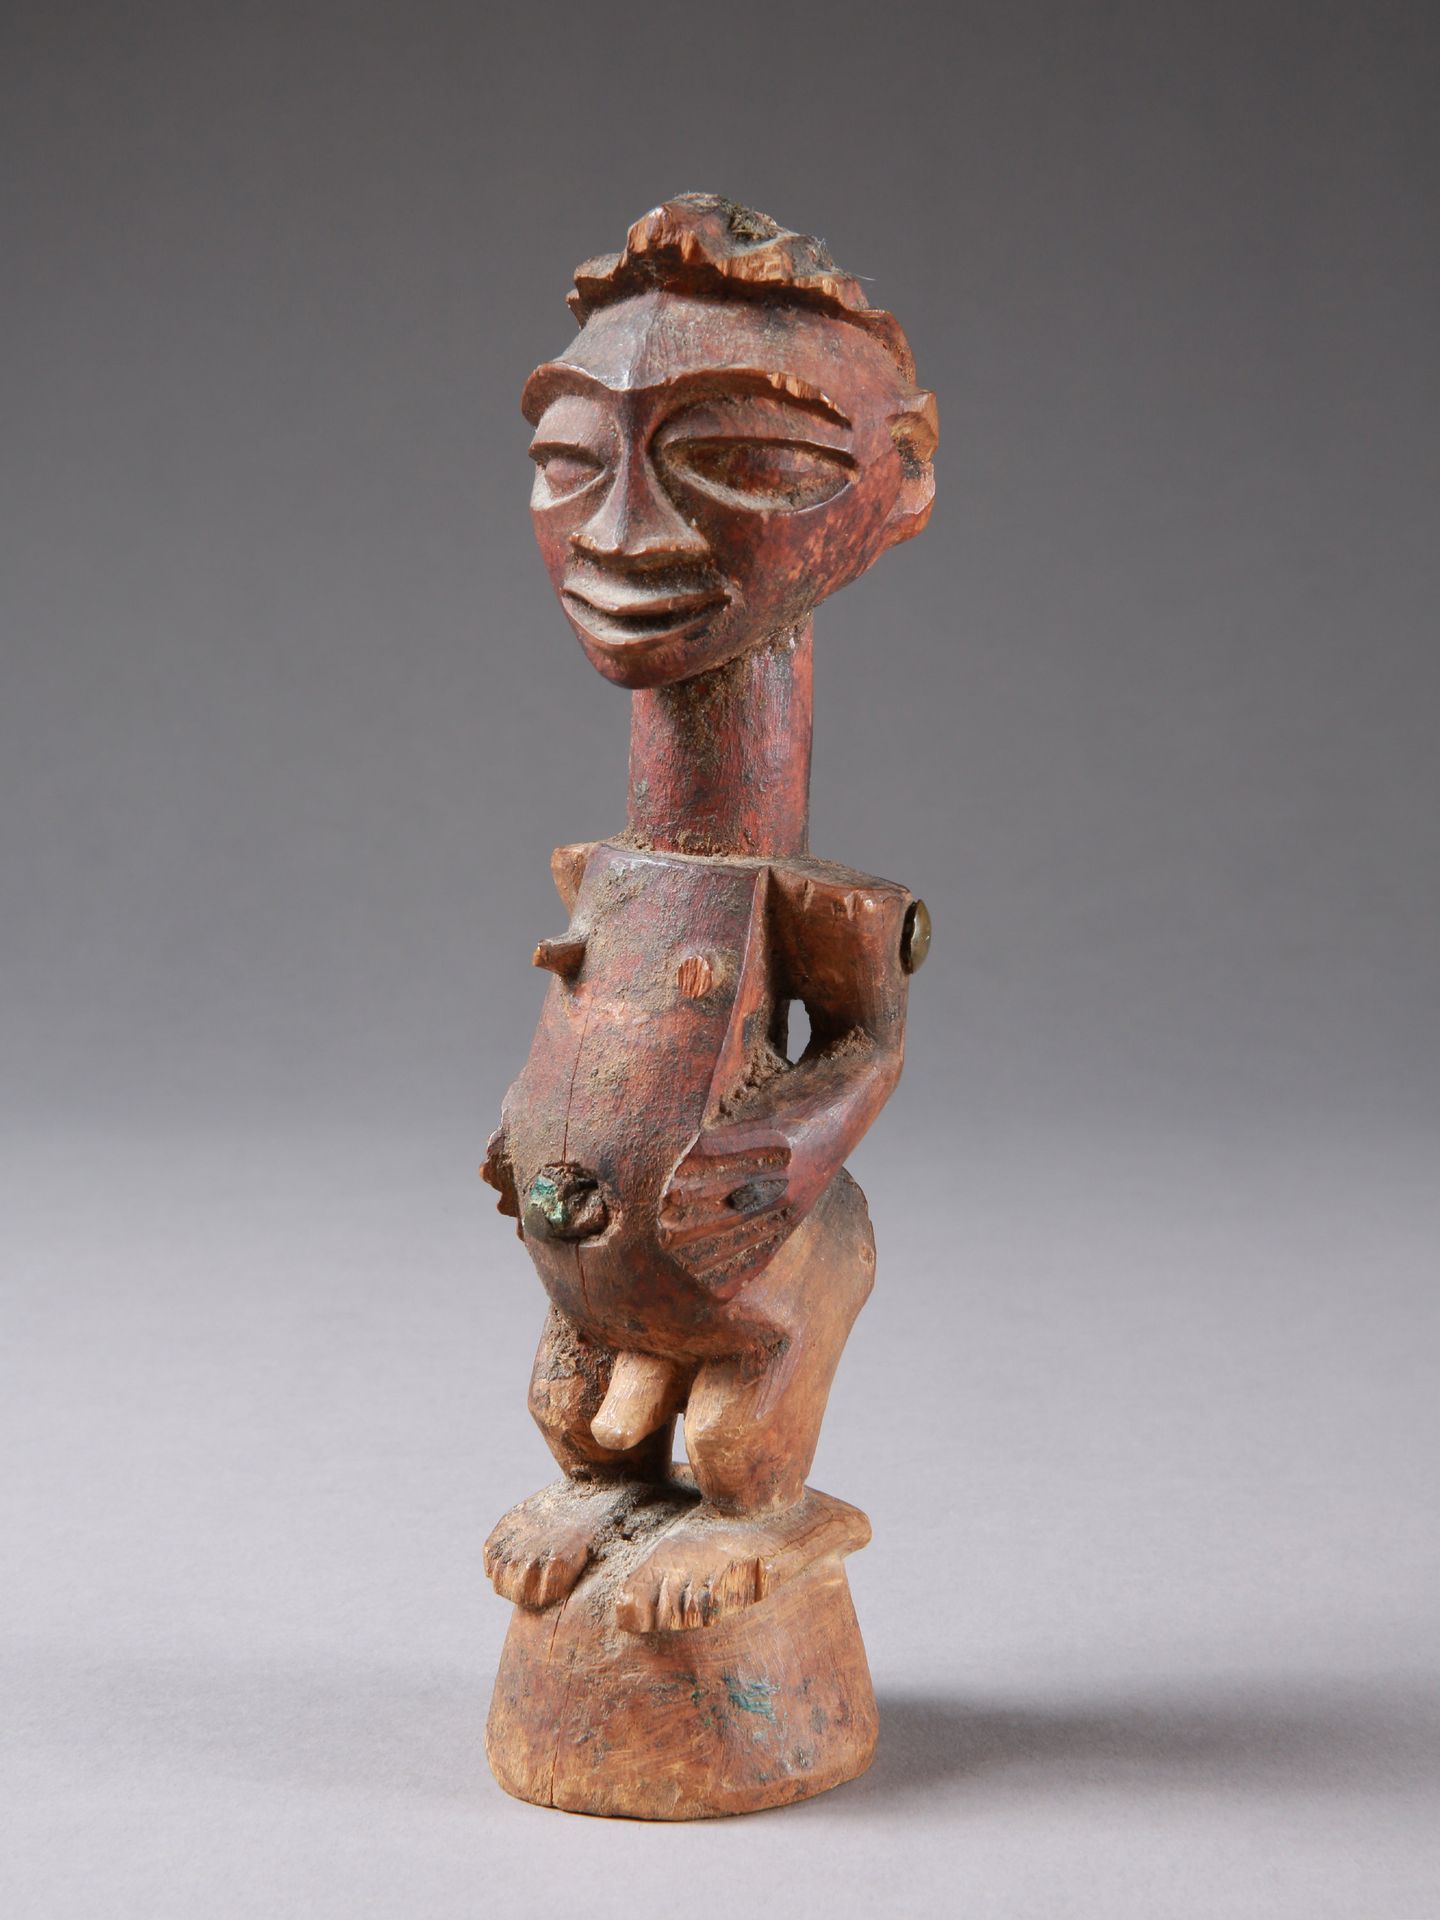 A Songye Miniature Figure,"nkisi" Figura in miniatura, "nkisi"
Songye, RD Congo
&hellip;